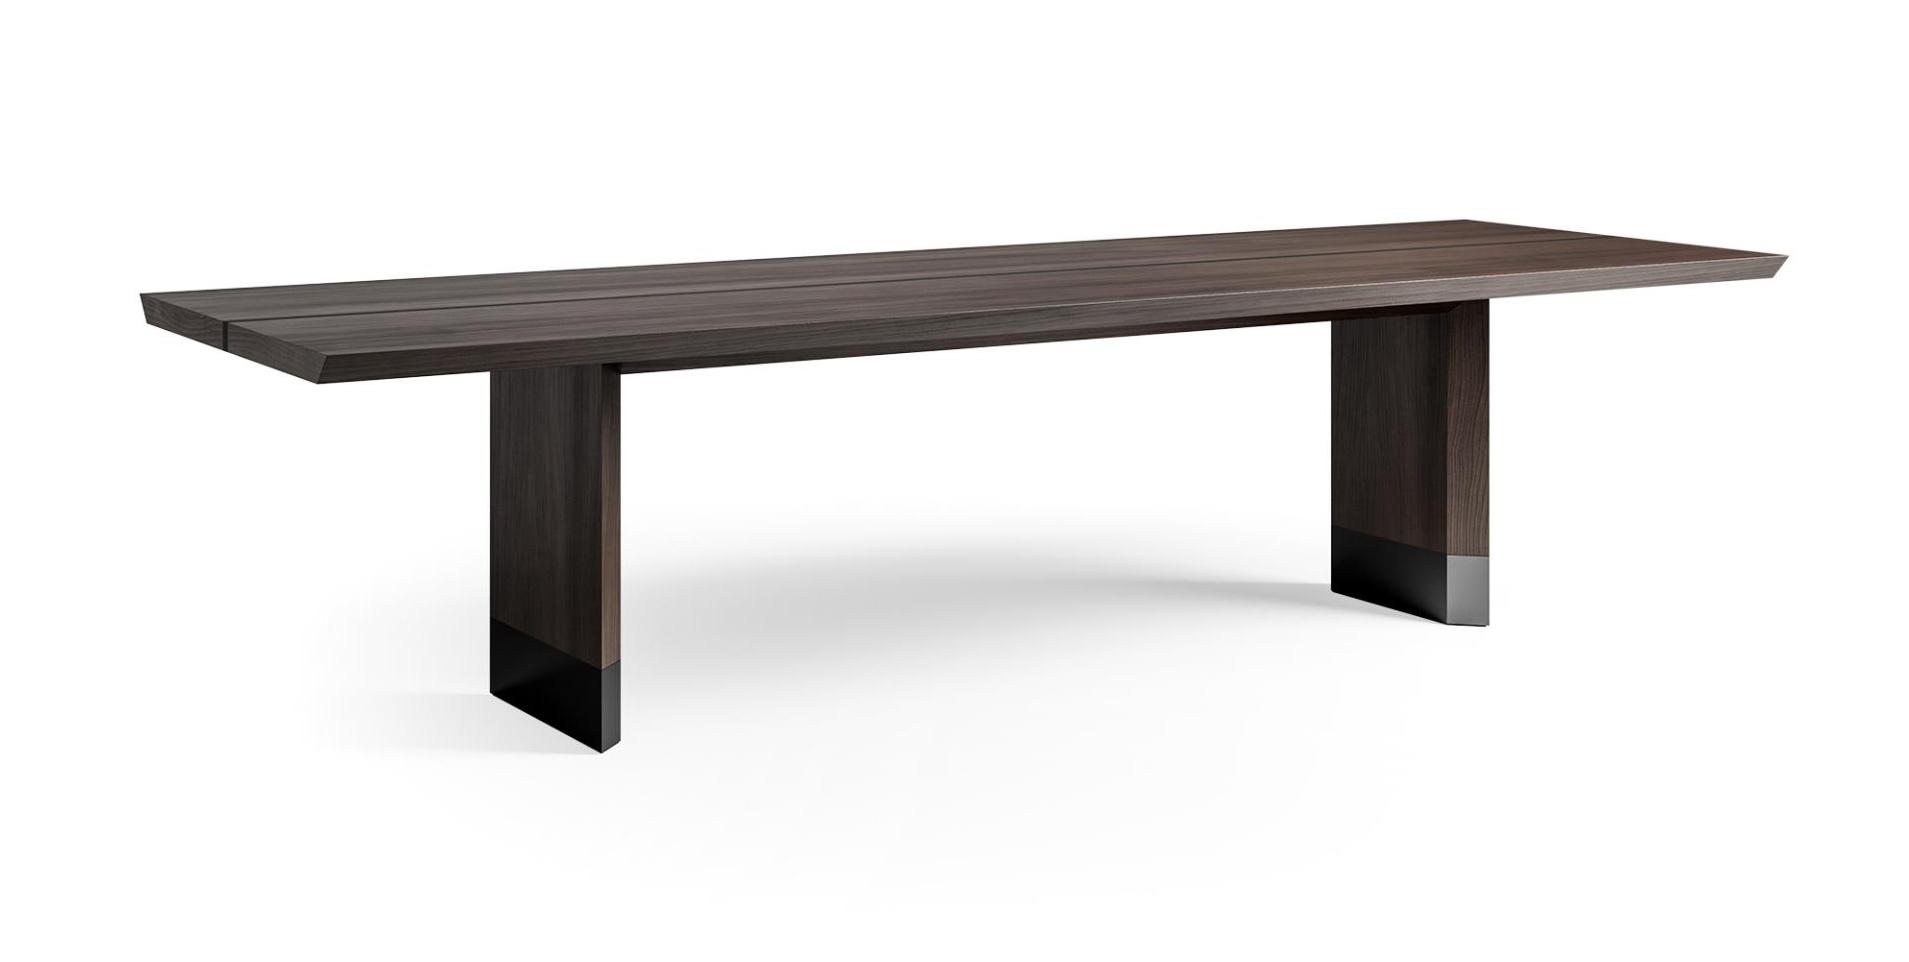 Cedar Veneer Table 290 with Wood & Metal Accents